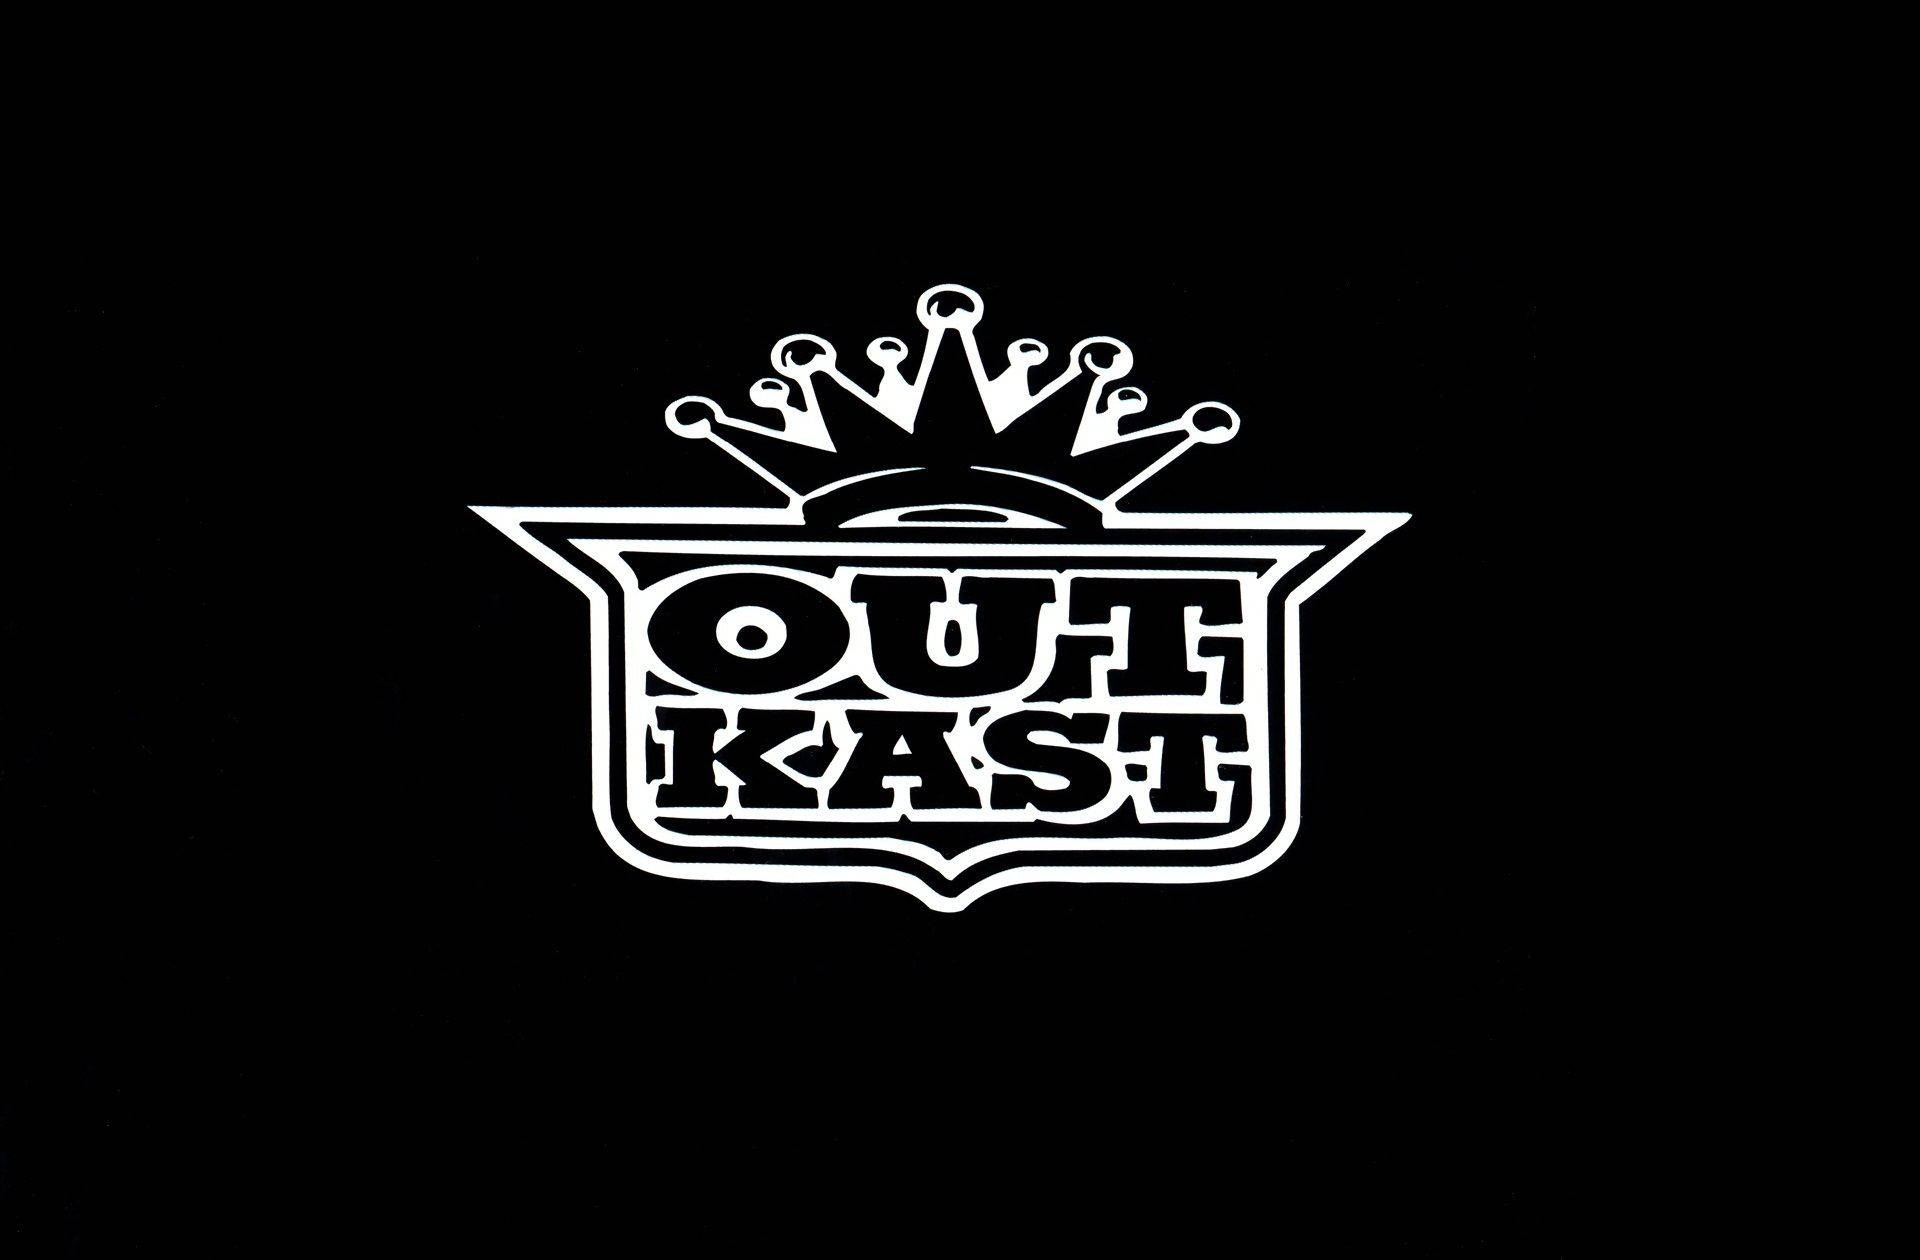 Outkast Logo Design Digital Art Picture